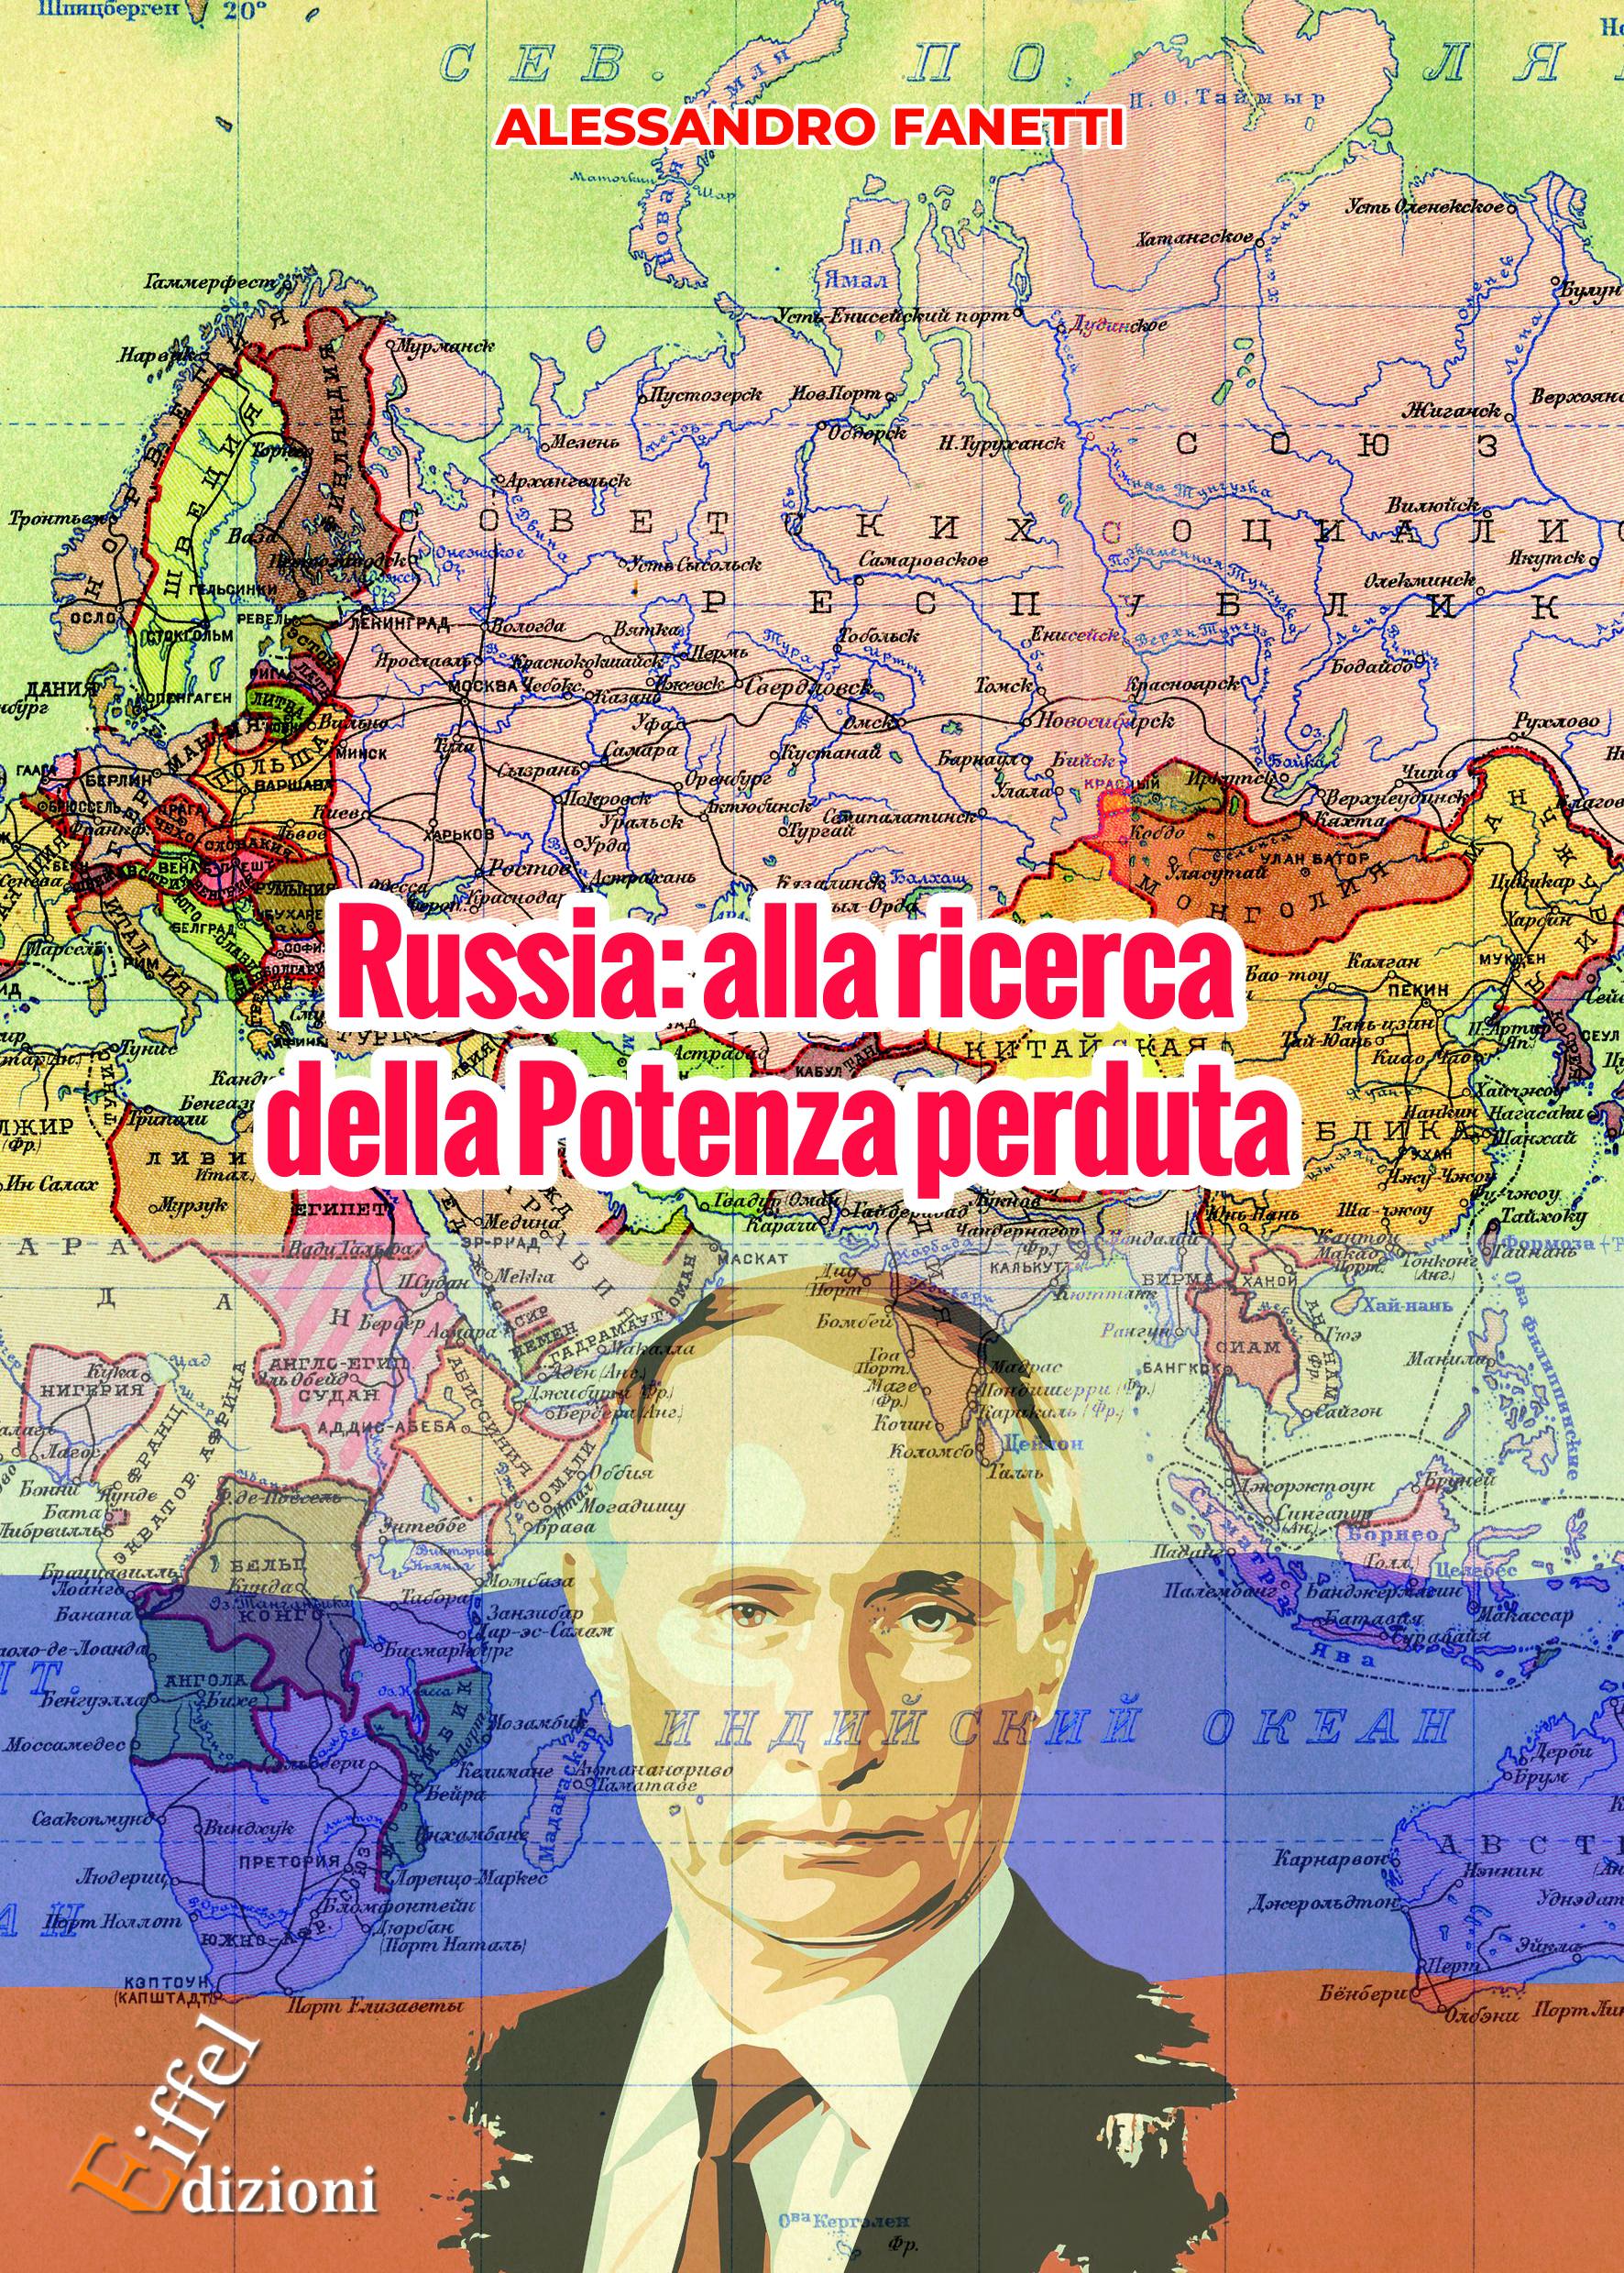 Libro | "Russia: alla ricerca della Potenza perduta. Dall’avvento di Putin alle prospettive future di un Paese orfano dell’URSS" (Alessandro Fanetti)